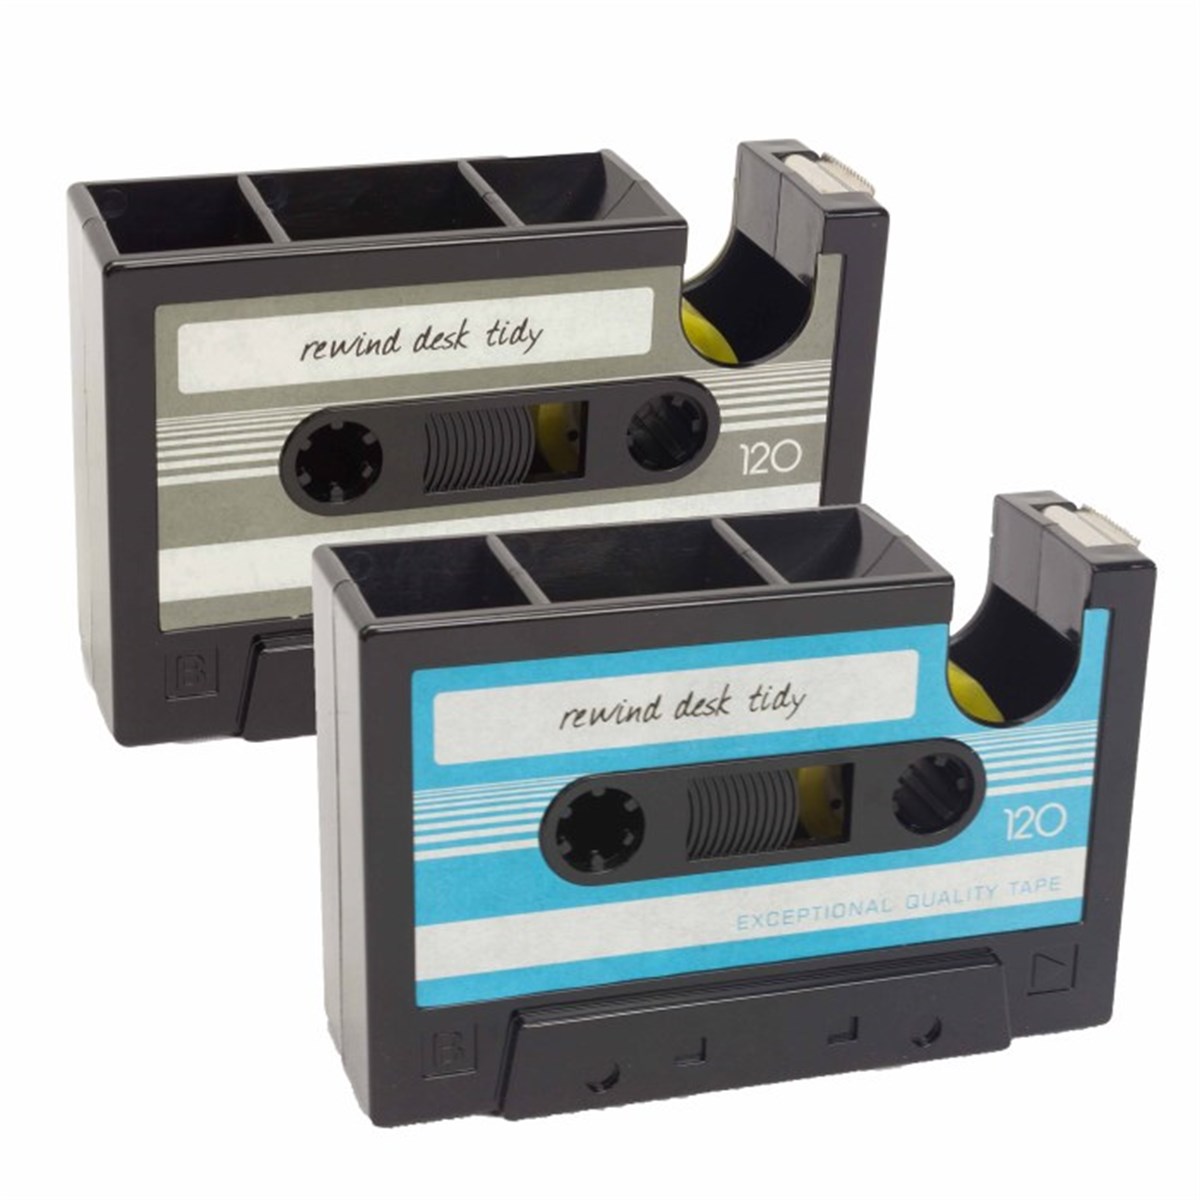 kaset-tasarimli-bant-makinesi-ve-kalemli-4da2.jpg